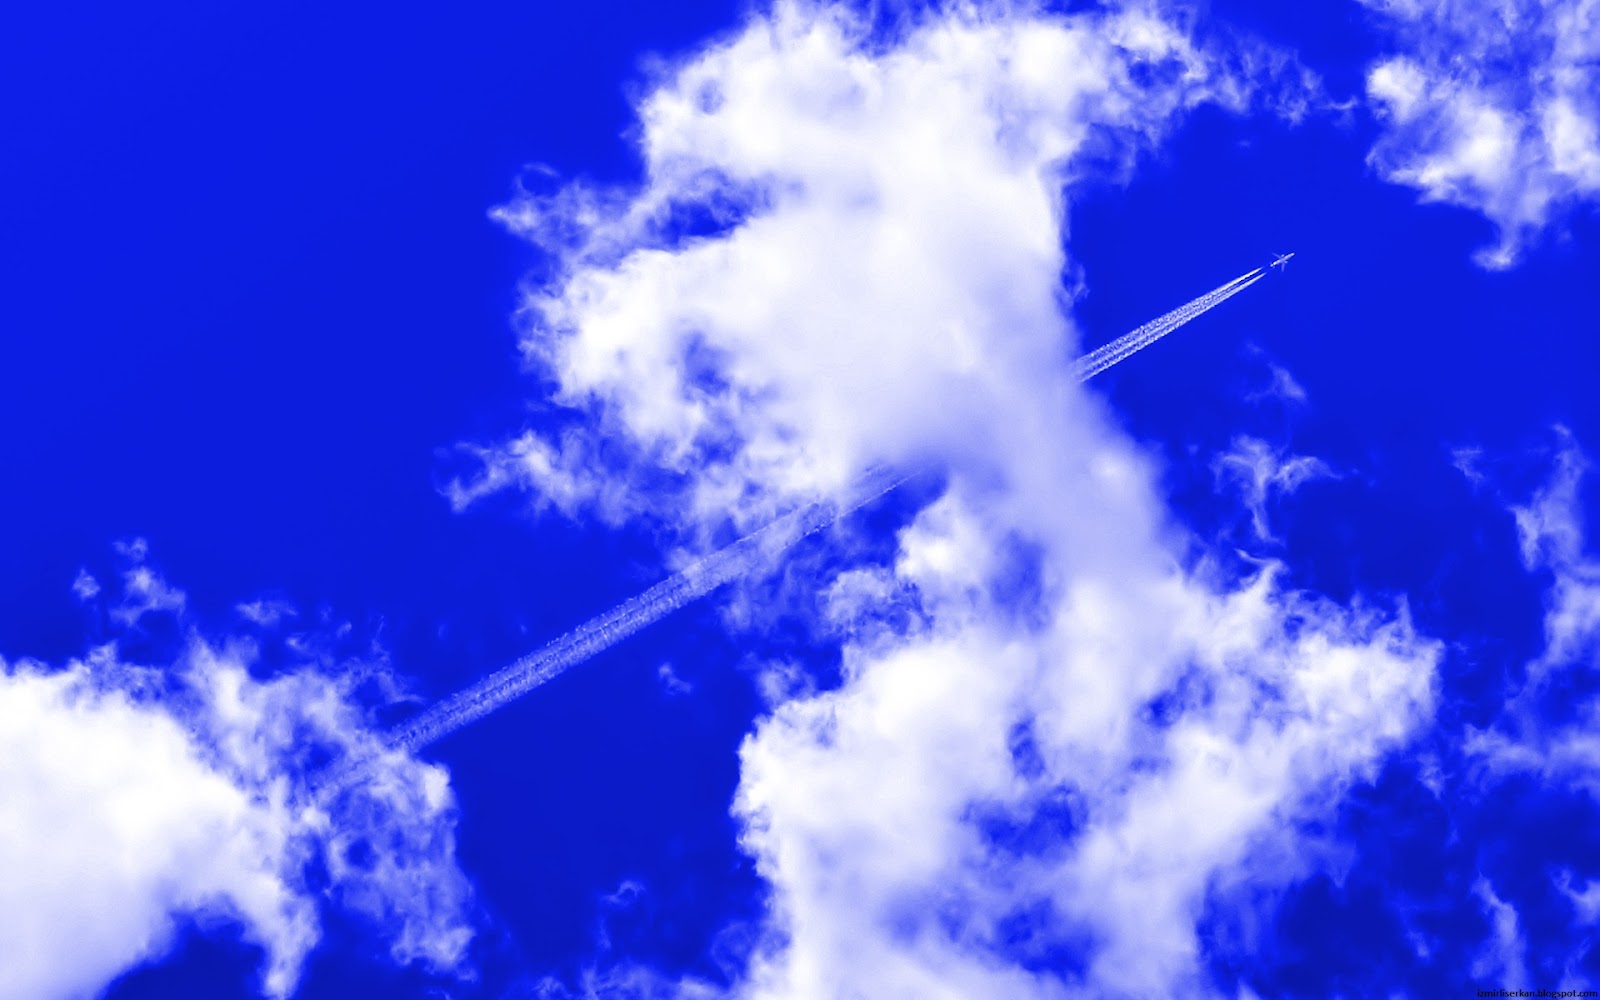 bulut fondo de pantalla,cielo,azul,nube,tiempo de día,azul eléctrico